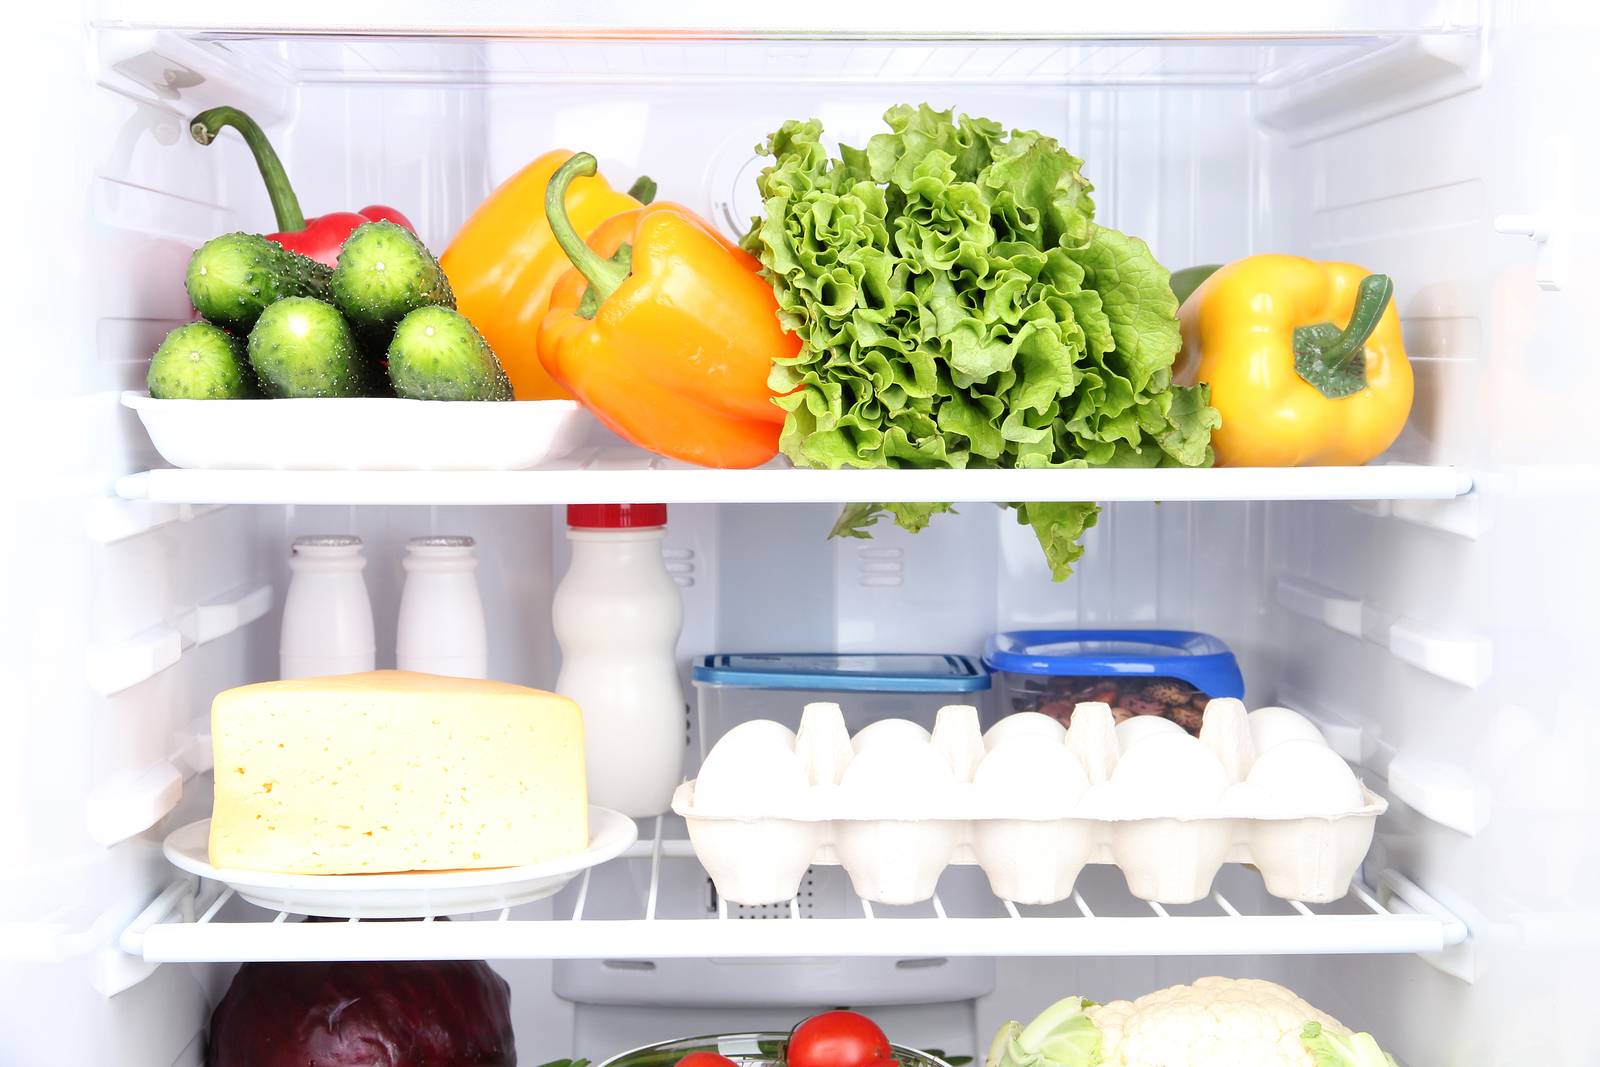 Правильное хранение продуктов в холодильнике дома